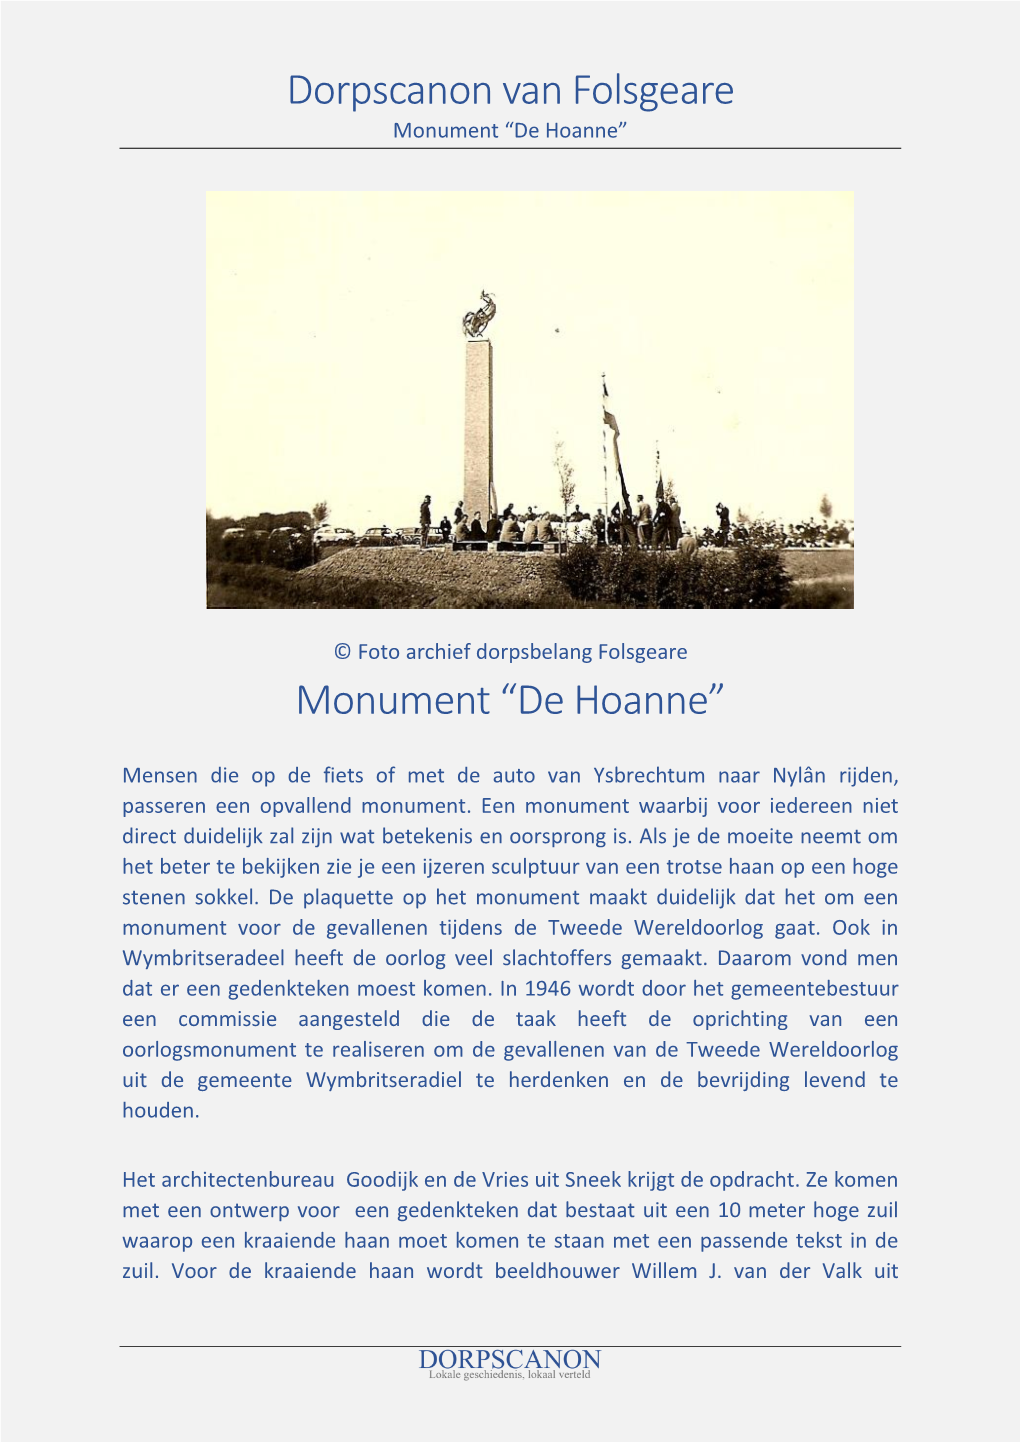 Dorpscanon Van Folsgeare Monument “De Hoanne”